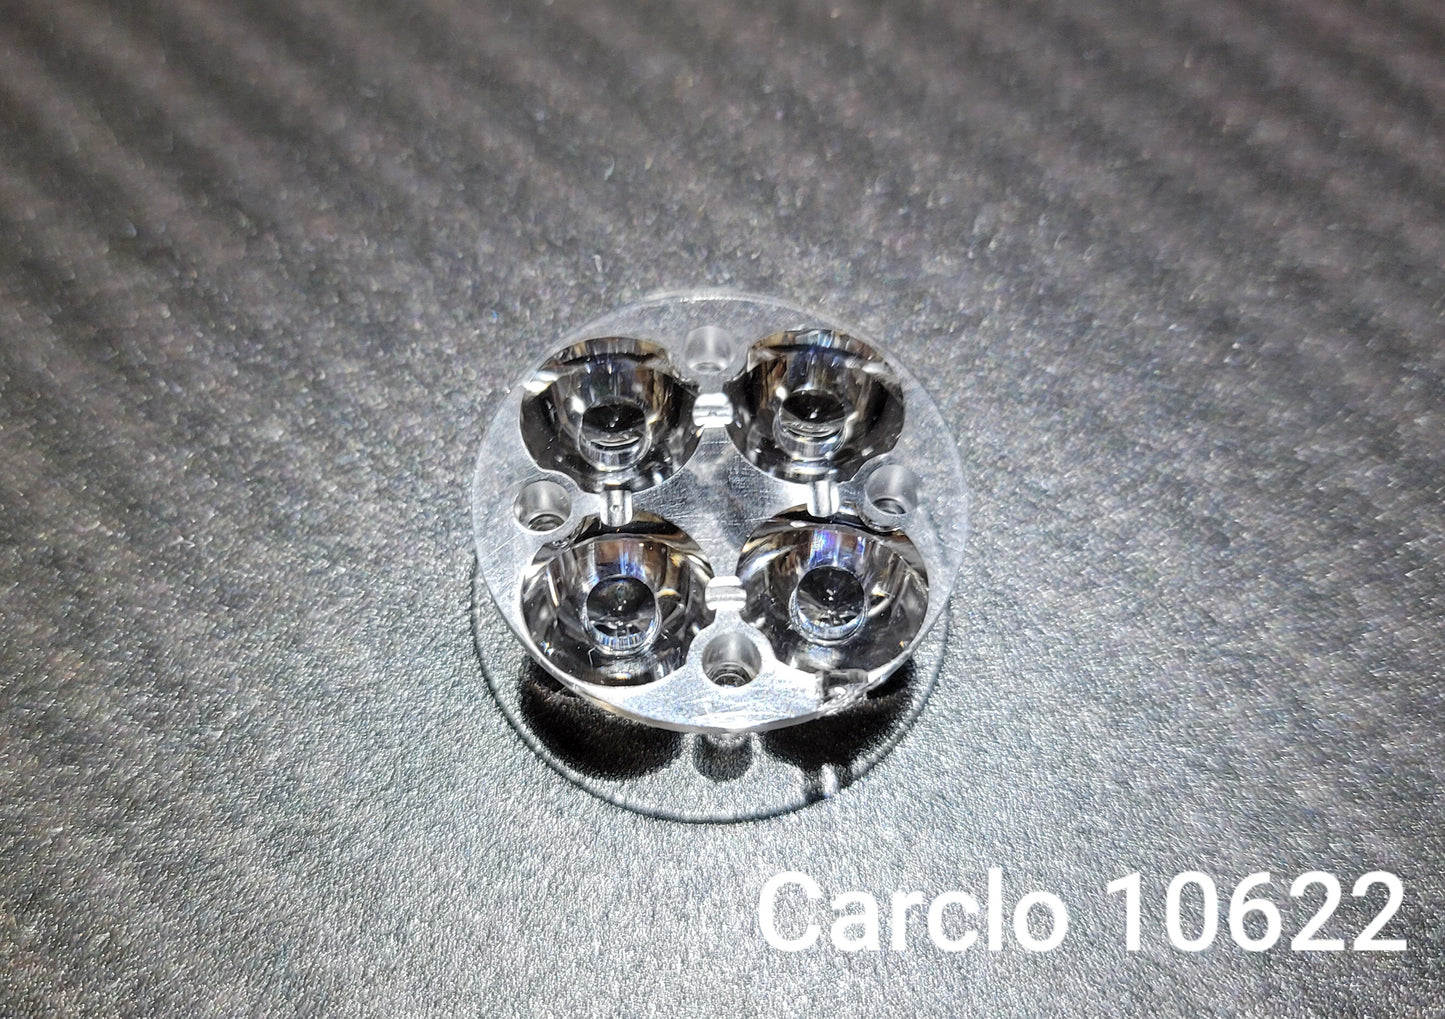 CARCLO 10622 QUAD LED OPTIC LENS FOR EMISAR D4V2 NOCTIGON KR4